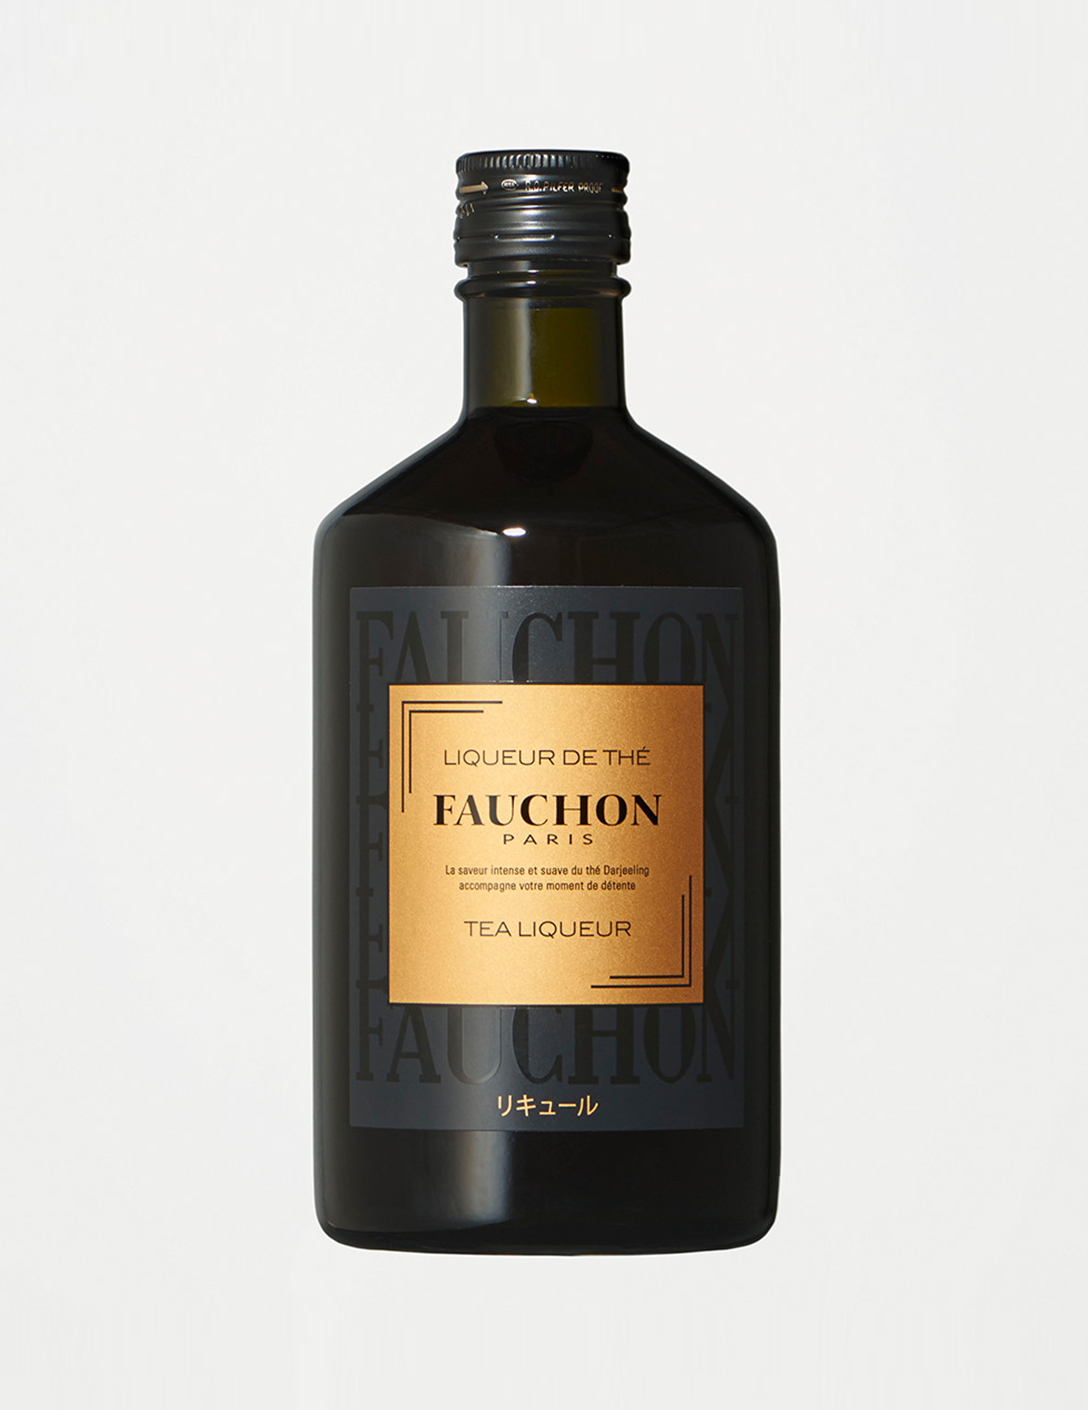 FAUCHON Tea Liqueur